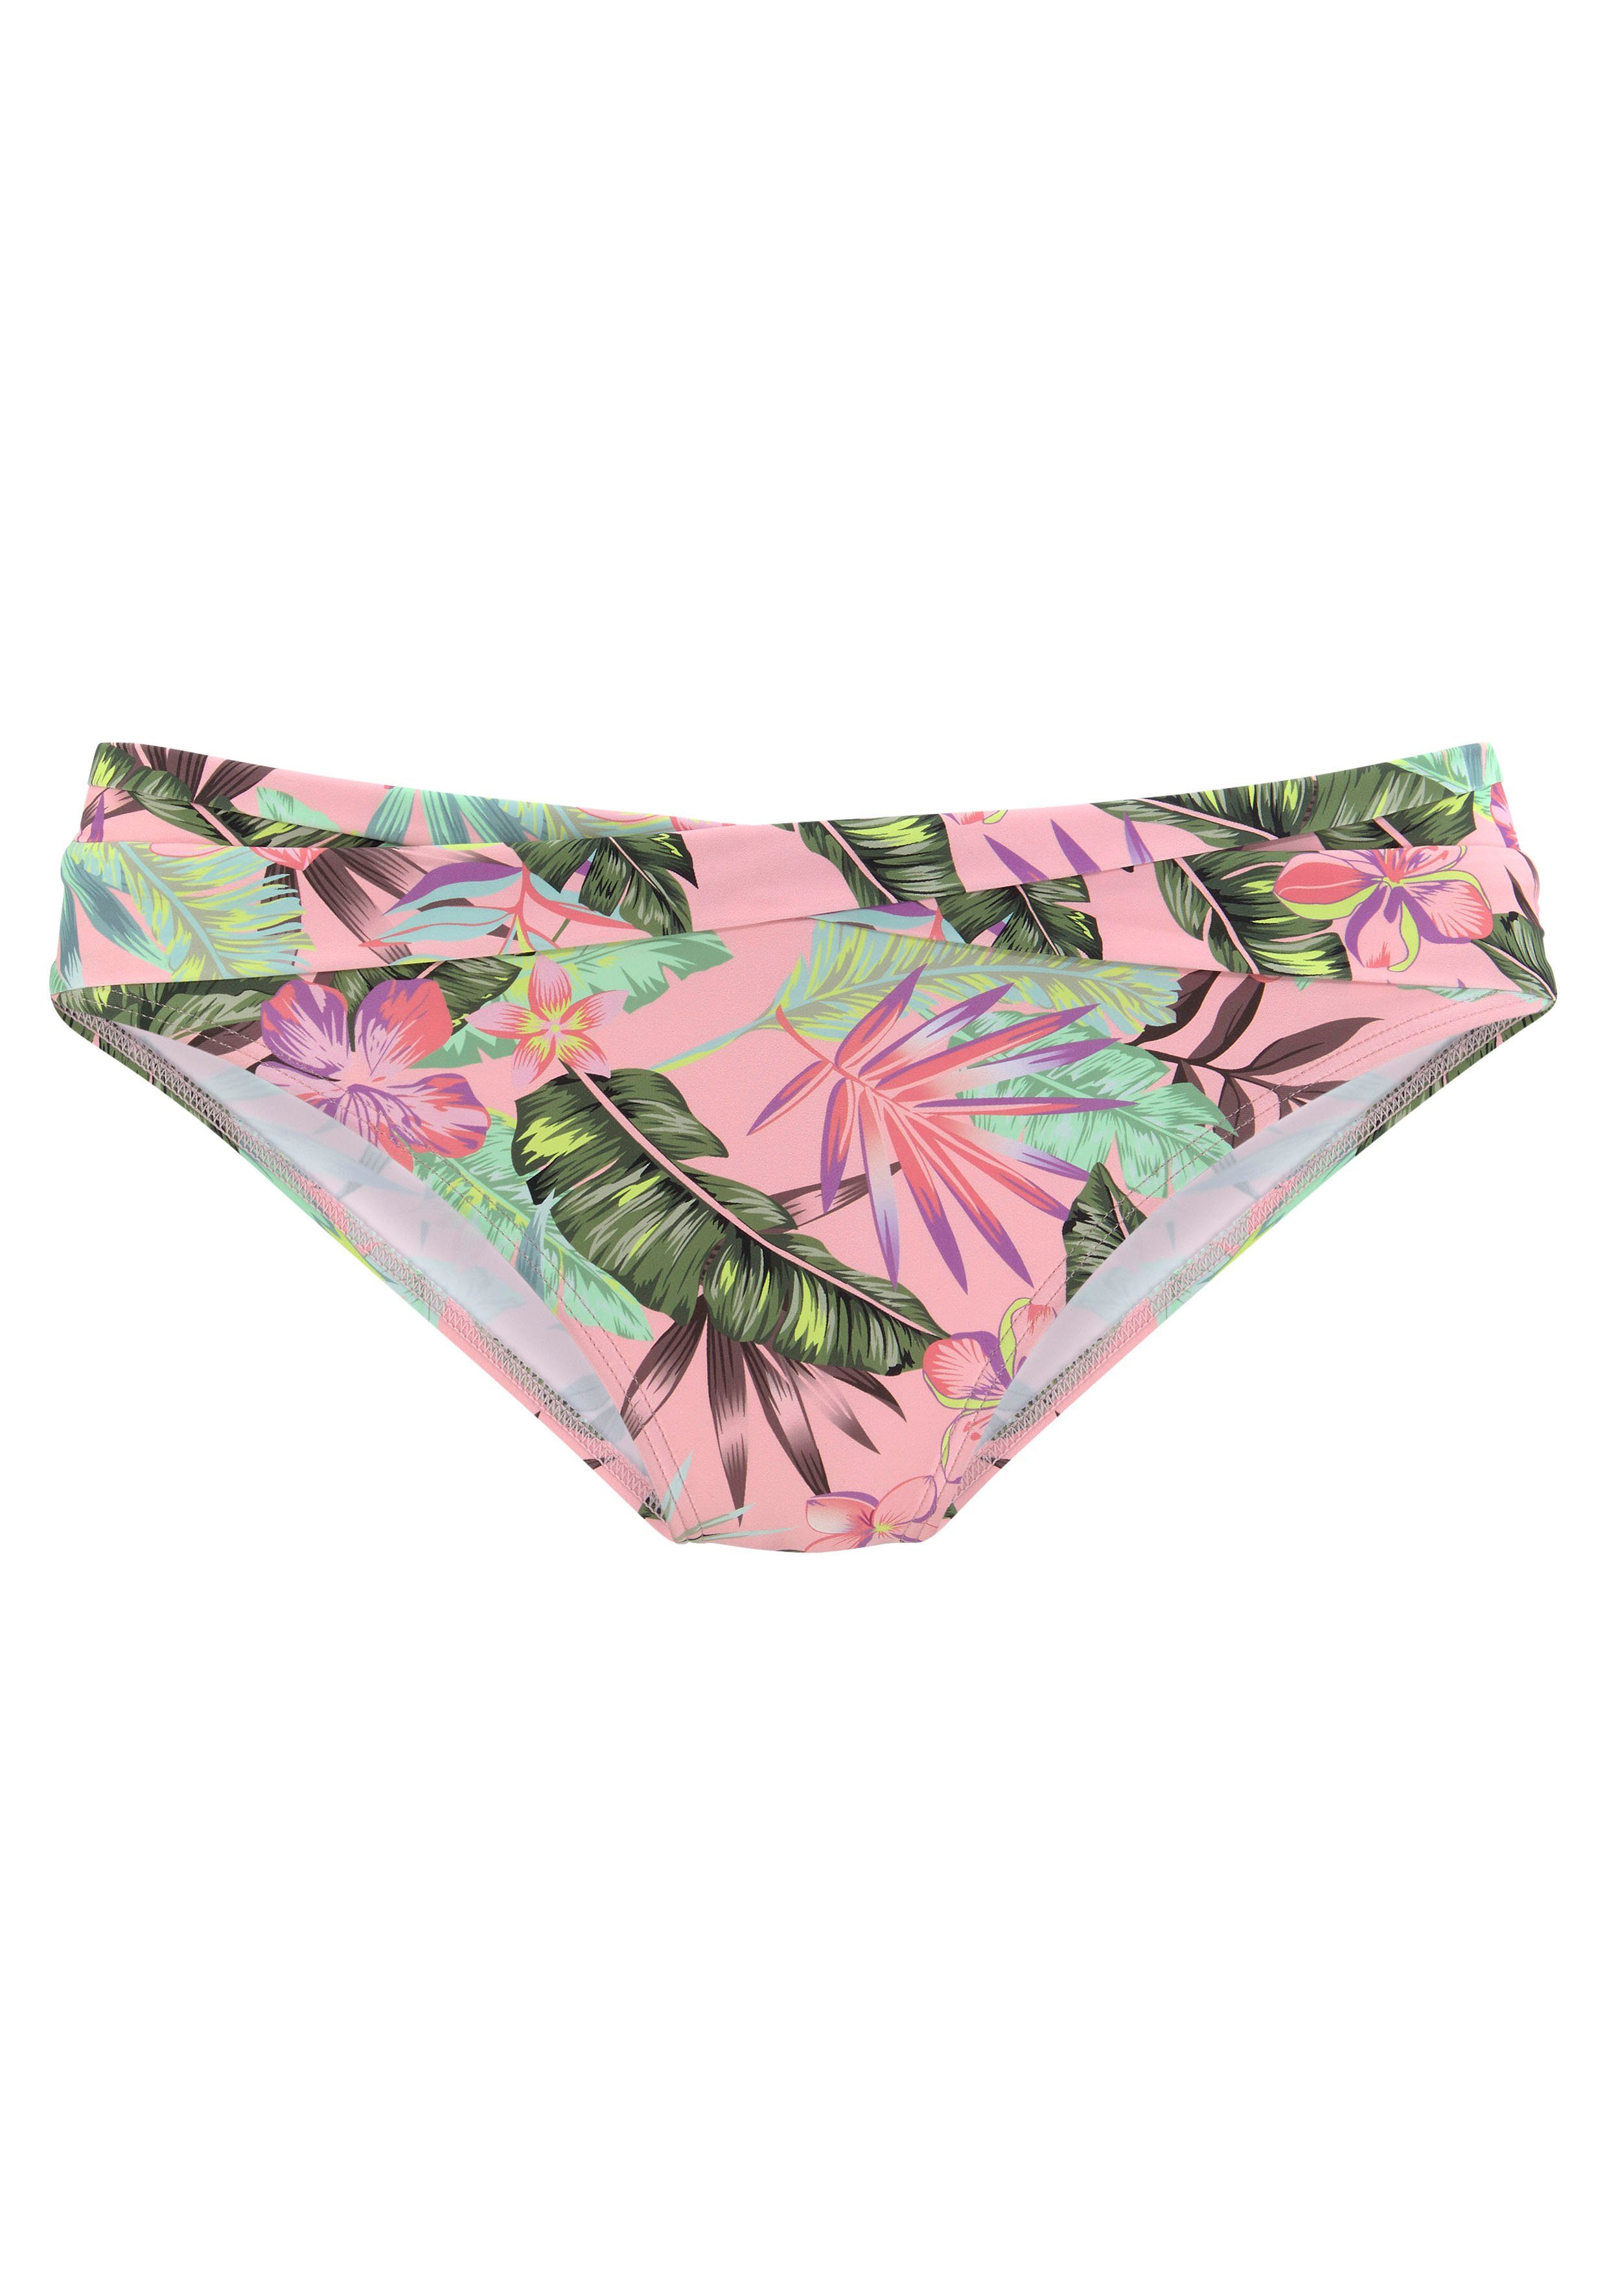 s.oliver red label beachwear bikinibroekje azalea met gedraaide band roze